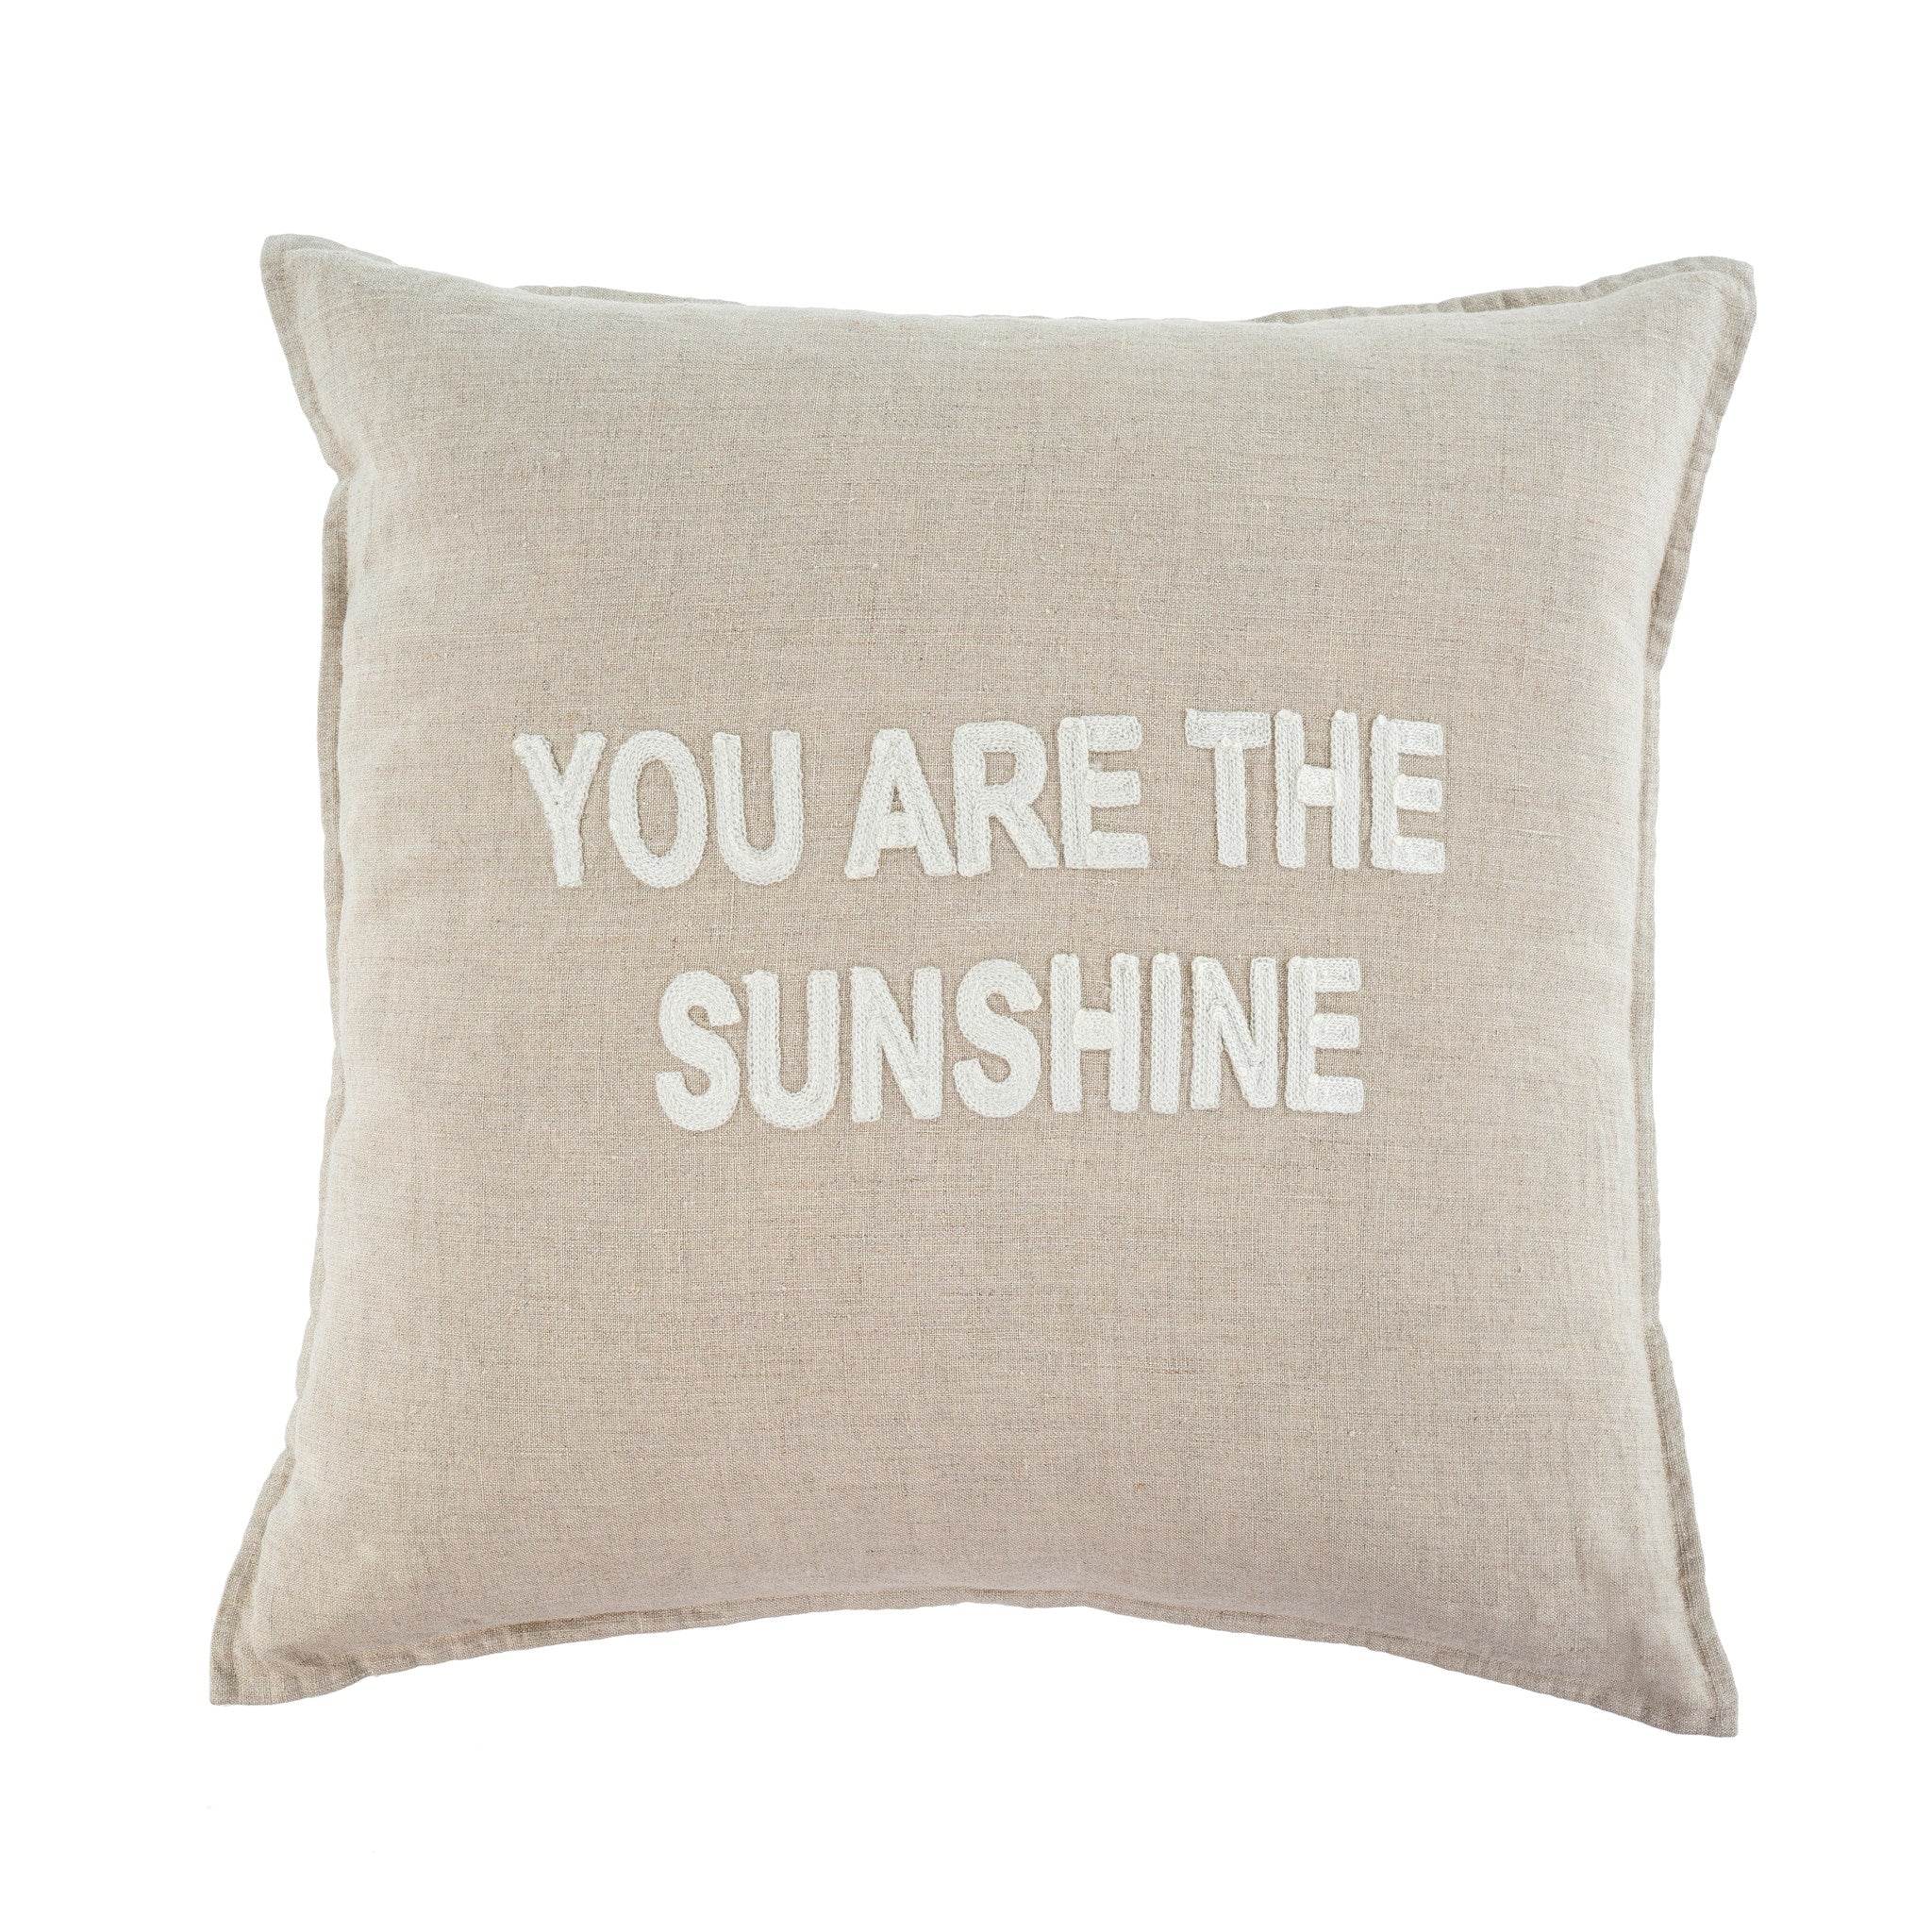 The Sunshine Linen Pillow